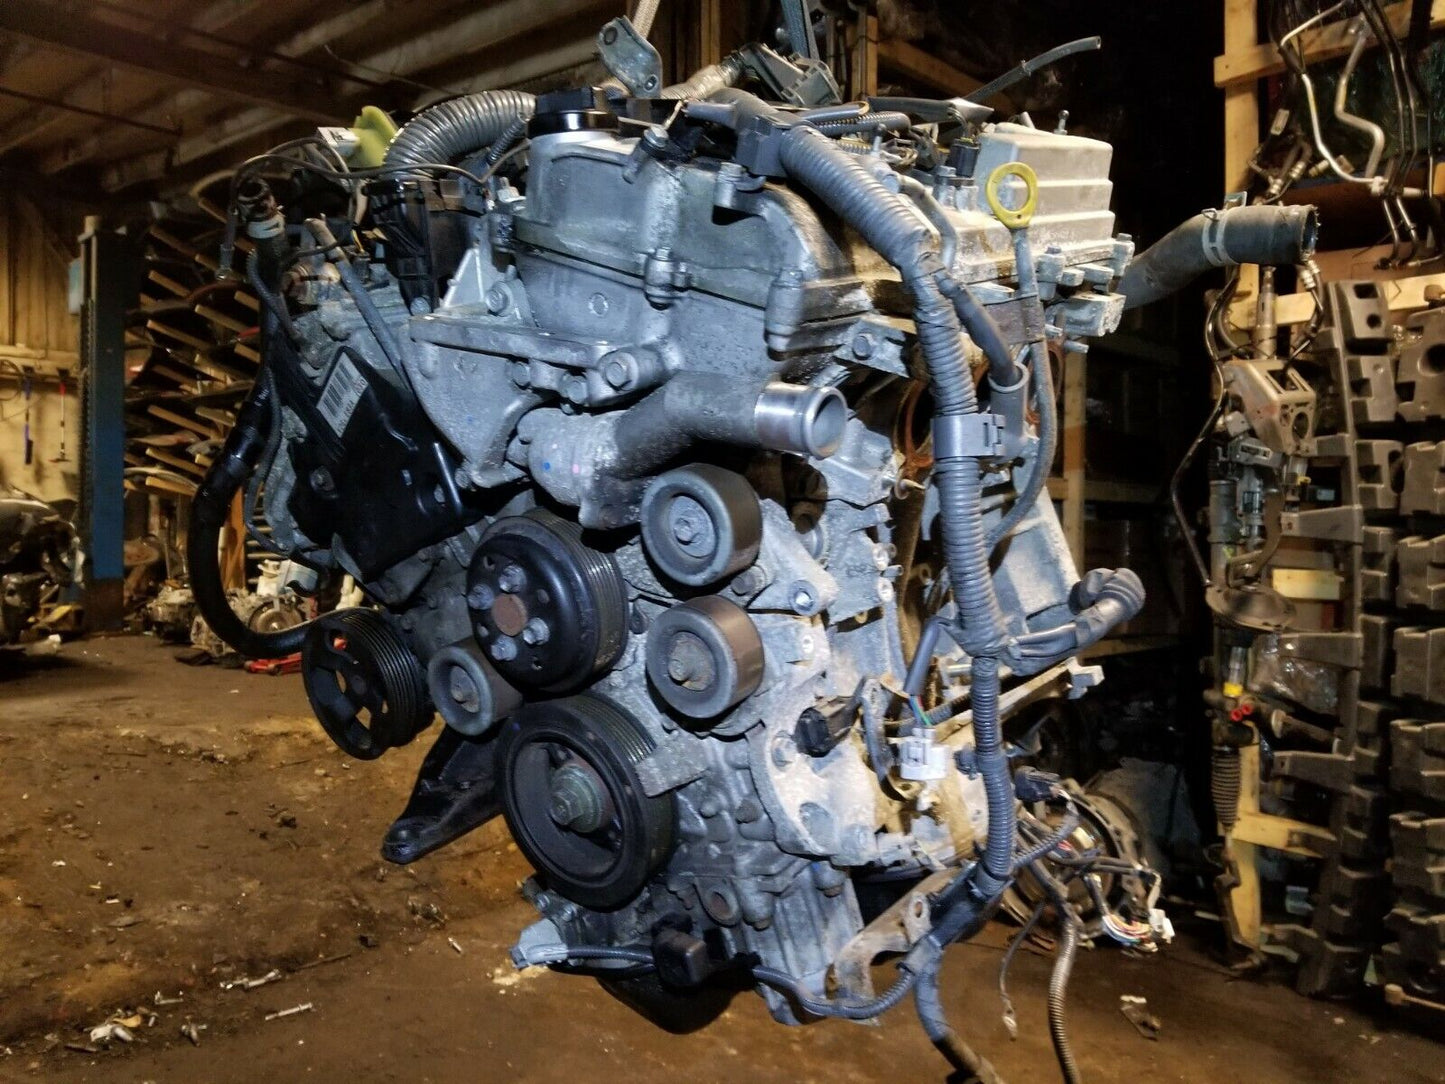 09 10 11 12 13 Lexus ES350 Engine Motor Oem. 2gr-fe